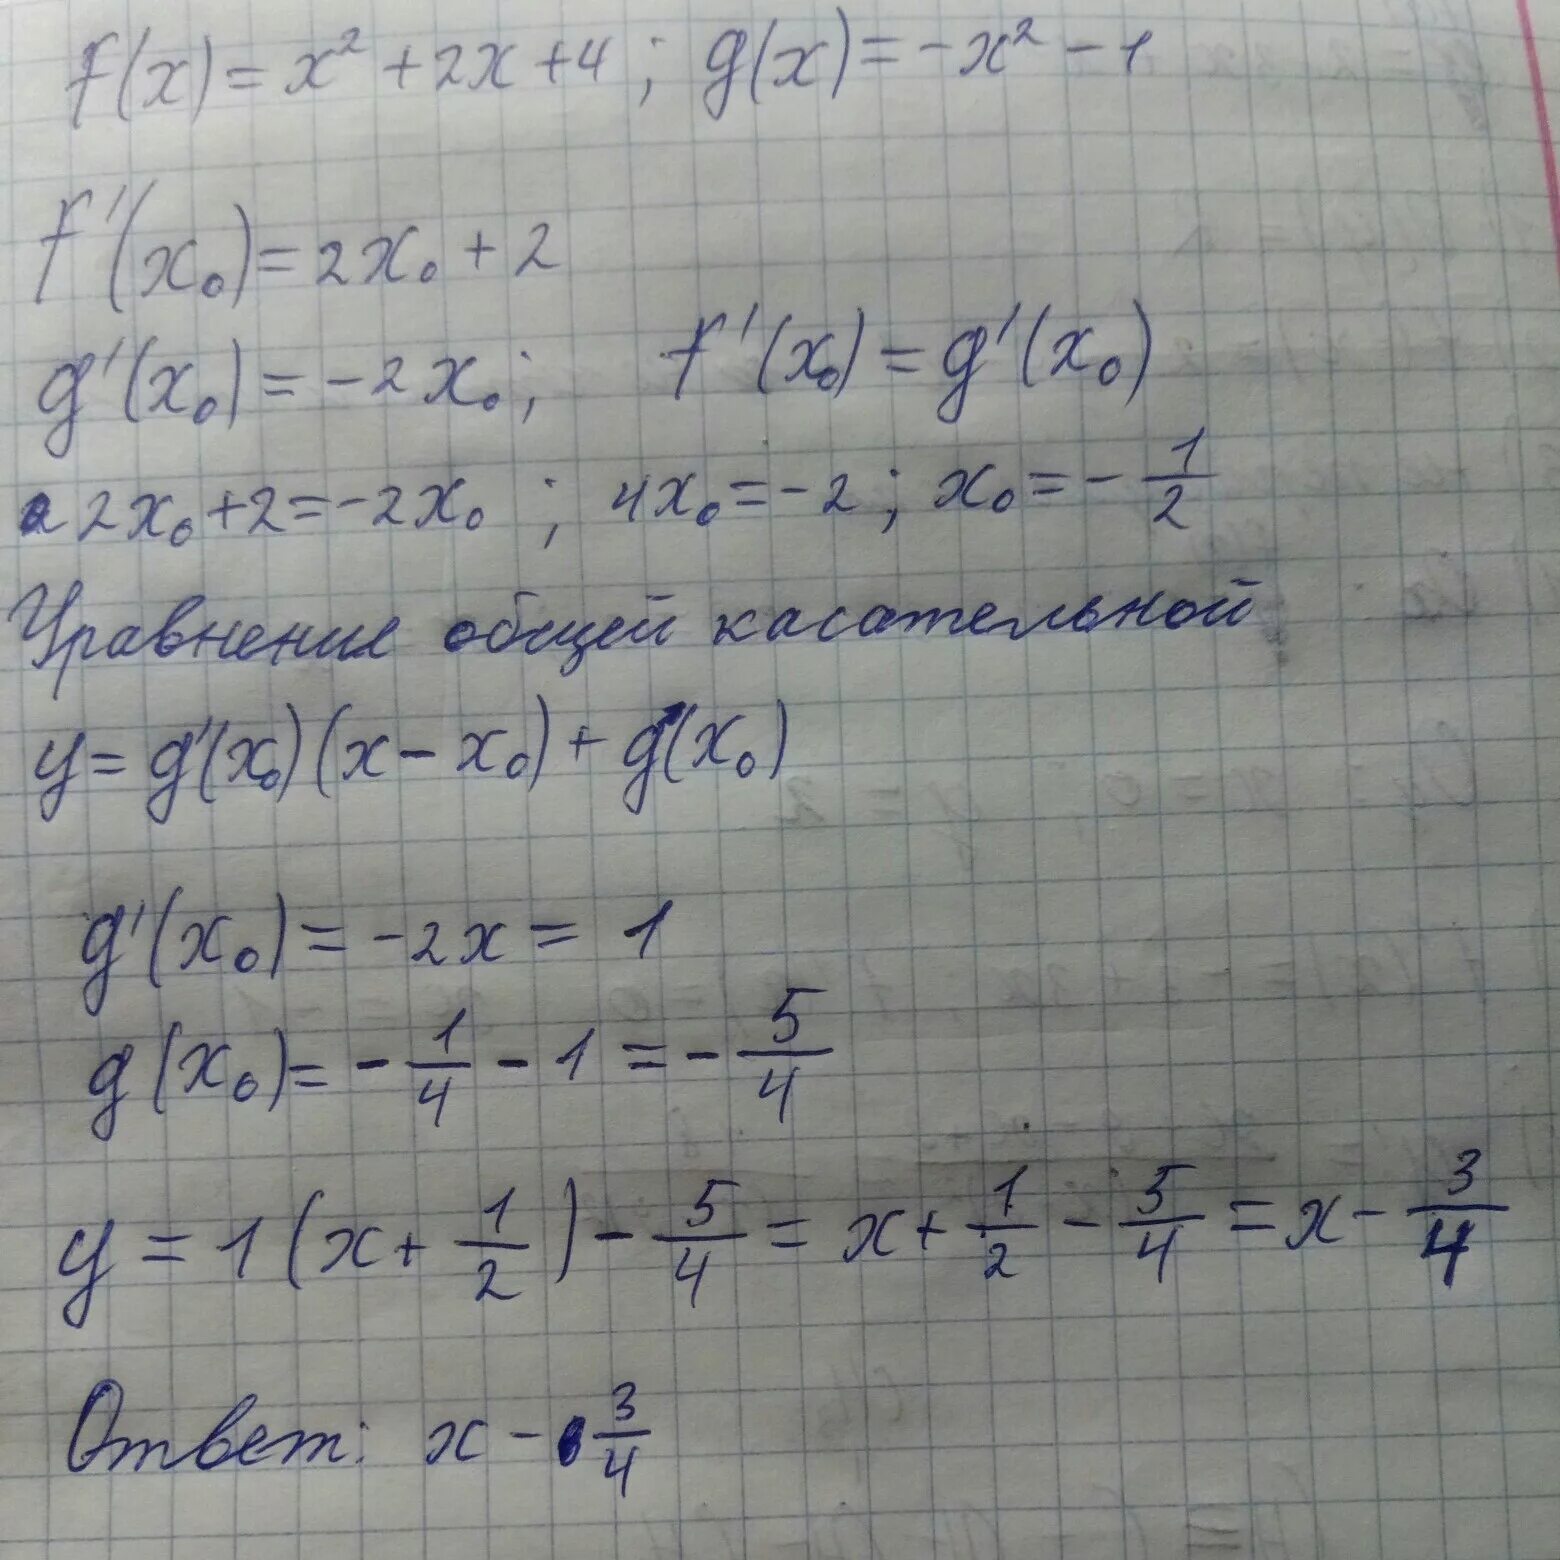 Даны функции f(x)=2x-1 и g(x)=x2. Даны функции f x x 2 -2x и g x 3x-4. G(2-X)/G(2+X). Даны функции f(x)=2x и g(x)=x^2. Даны функции f x 3x 1